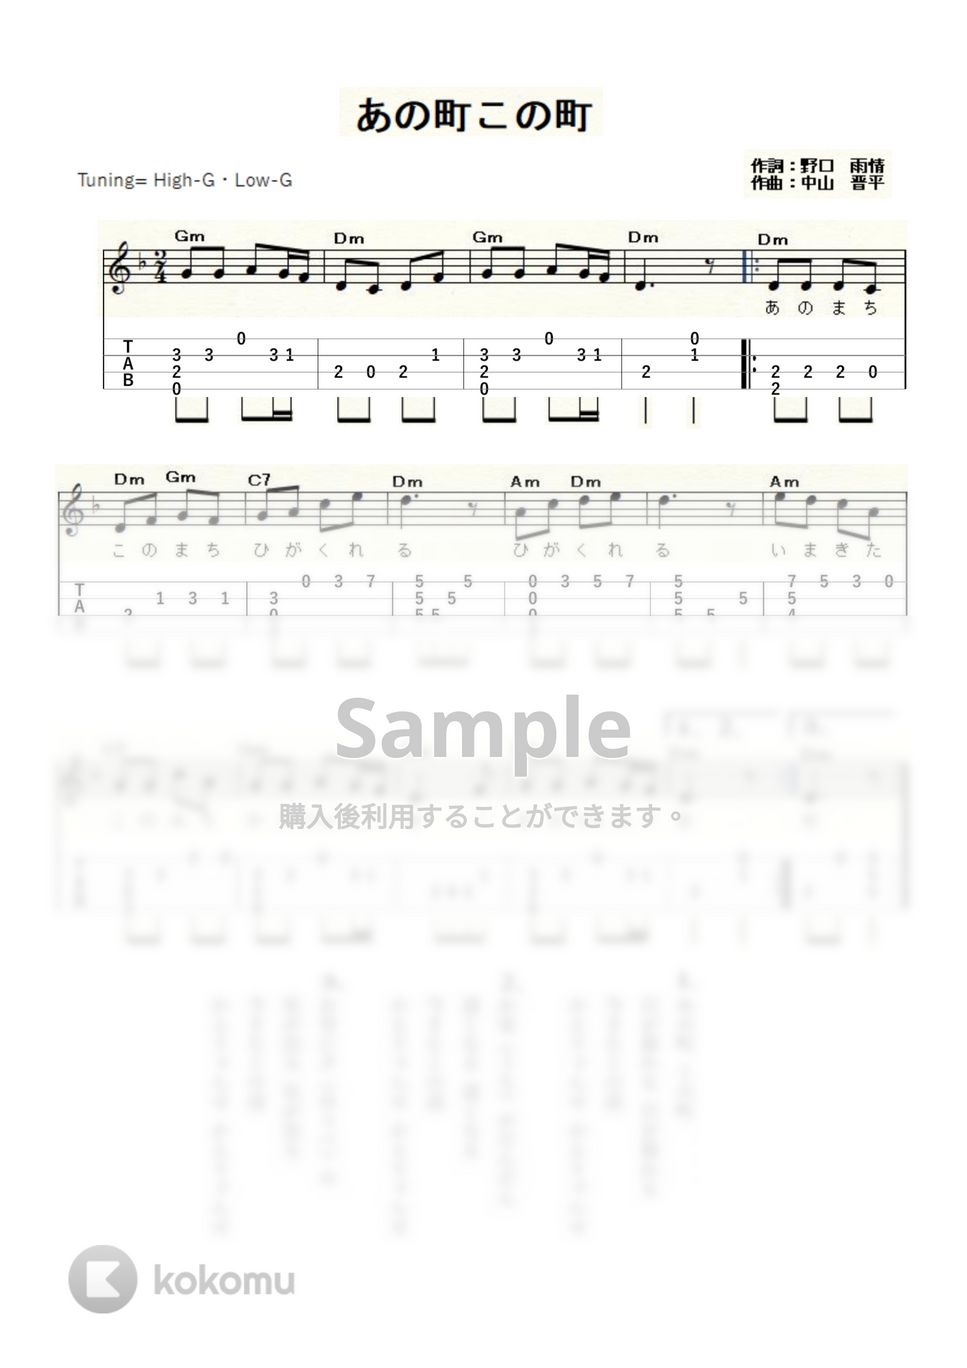 あの町この町 (ｳｸﾚﾚｿﾛ / High-G・Low-G / 初級～中級) by ukulelepapa